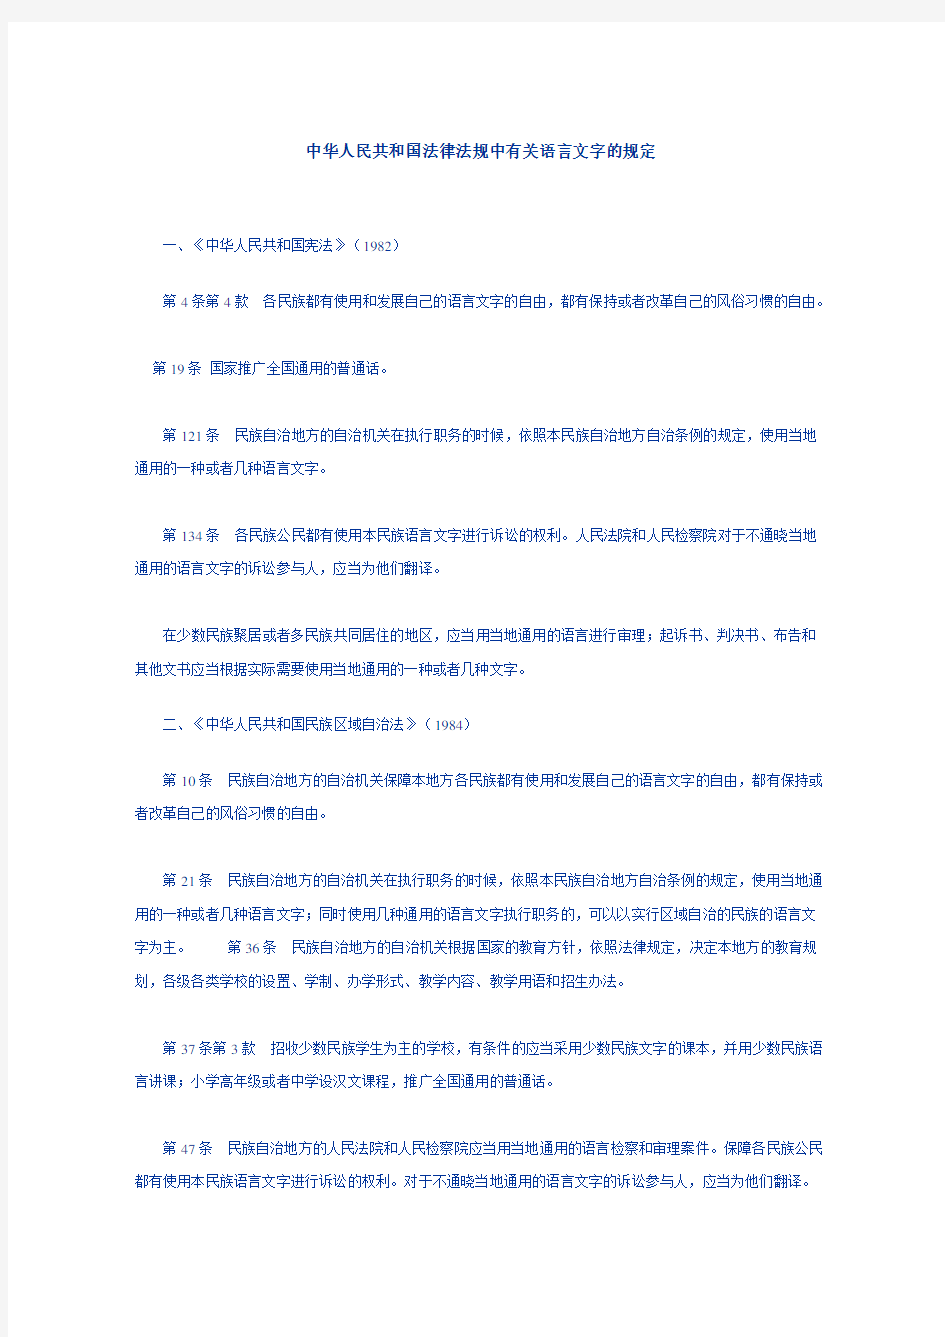 中华人民共和国法律法规中有关语言文字的规定.